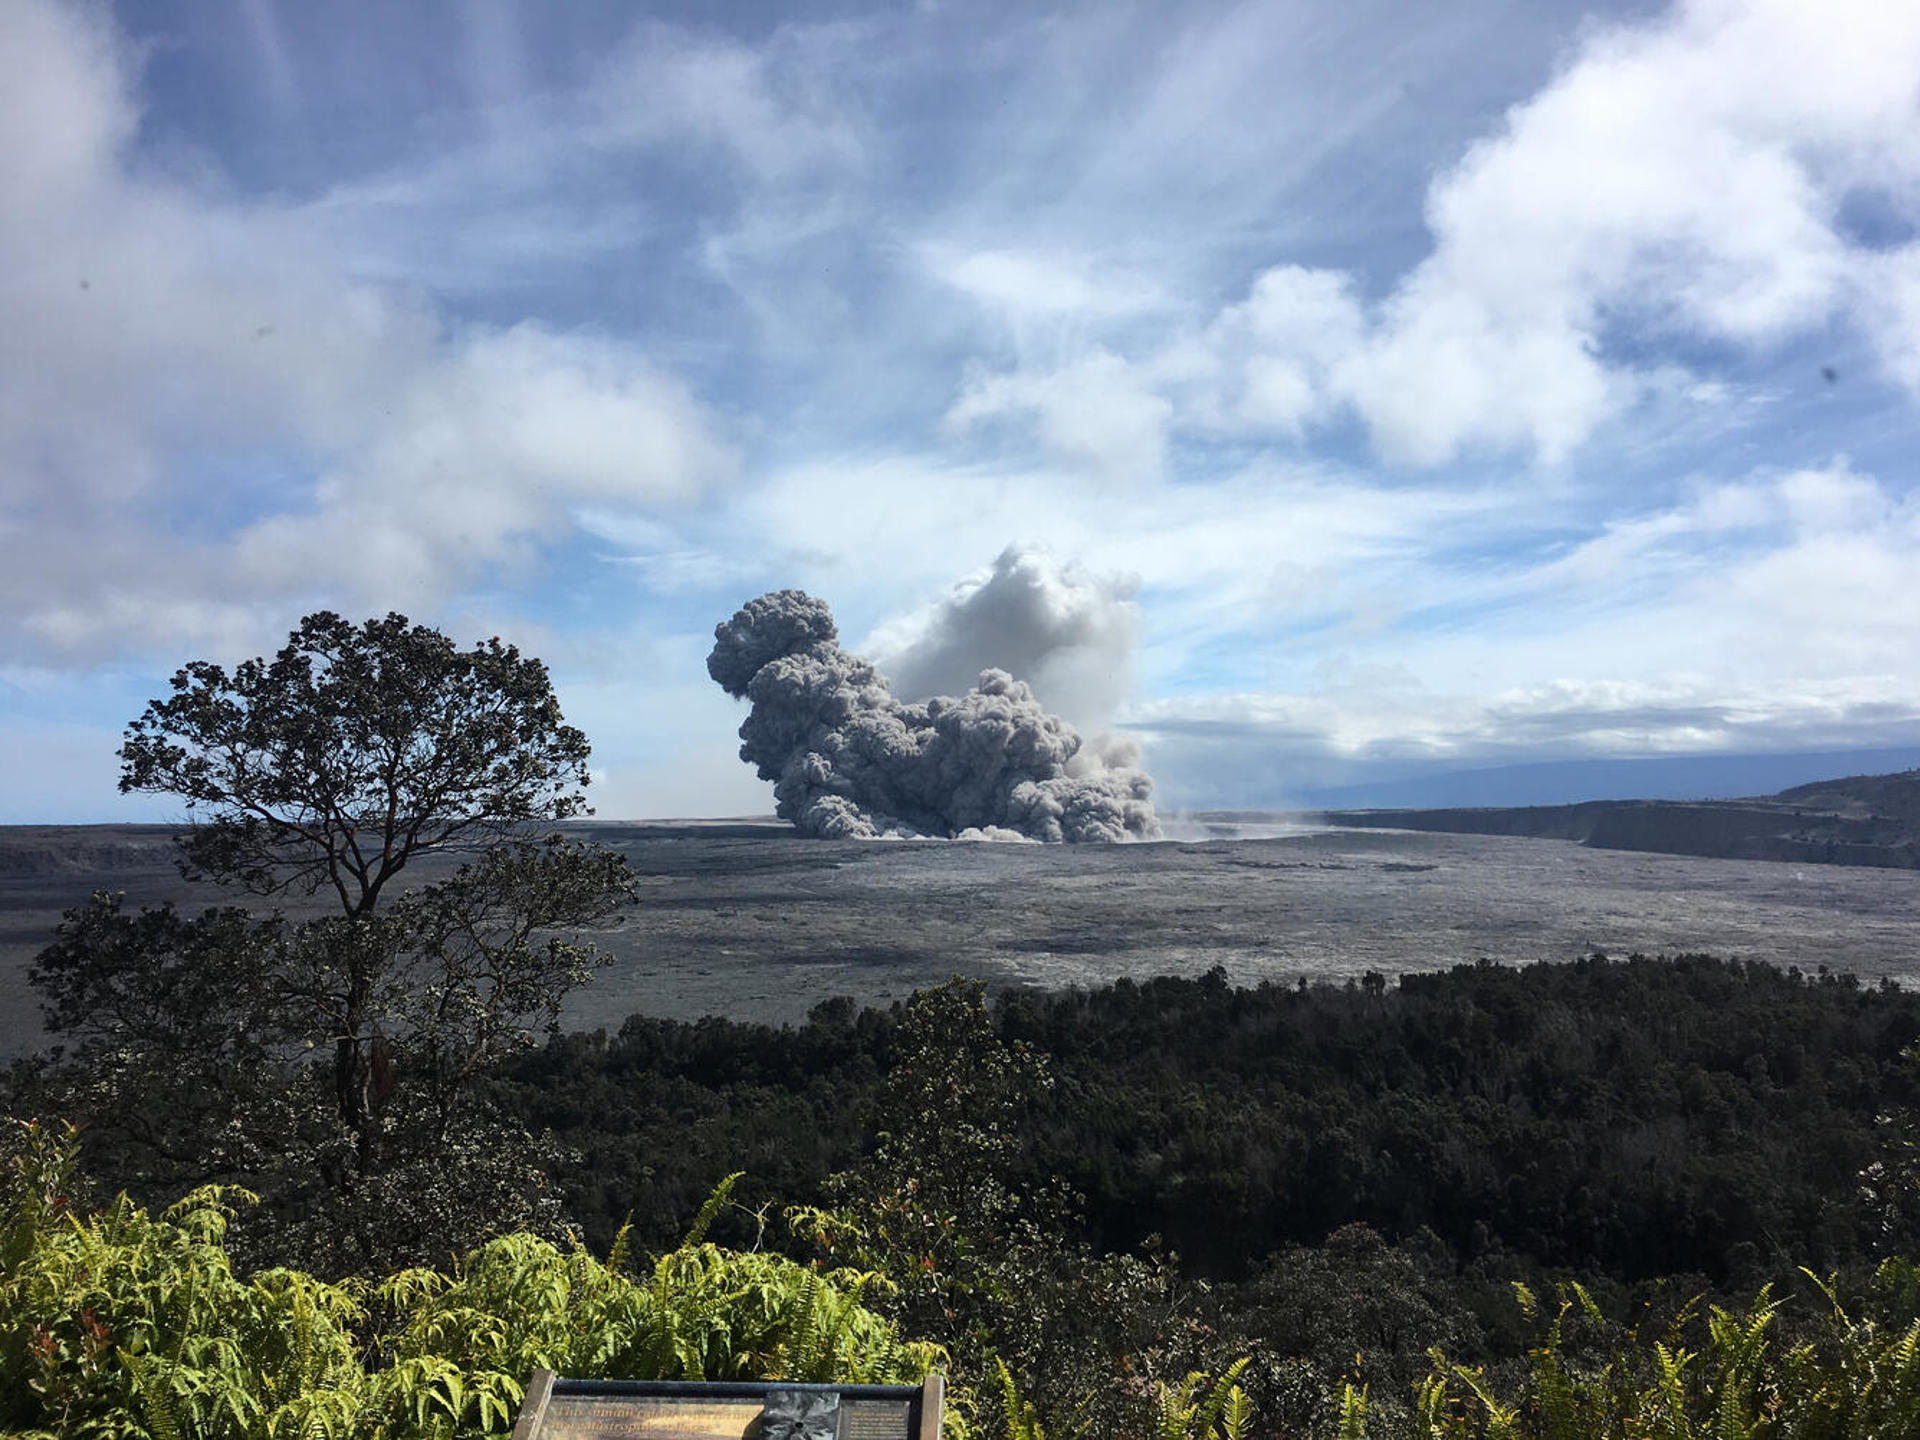 Erupción del volcán Kilauea (Hawai) en 2018. Crédito: Universidad de Oregón